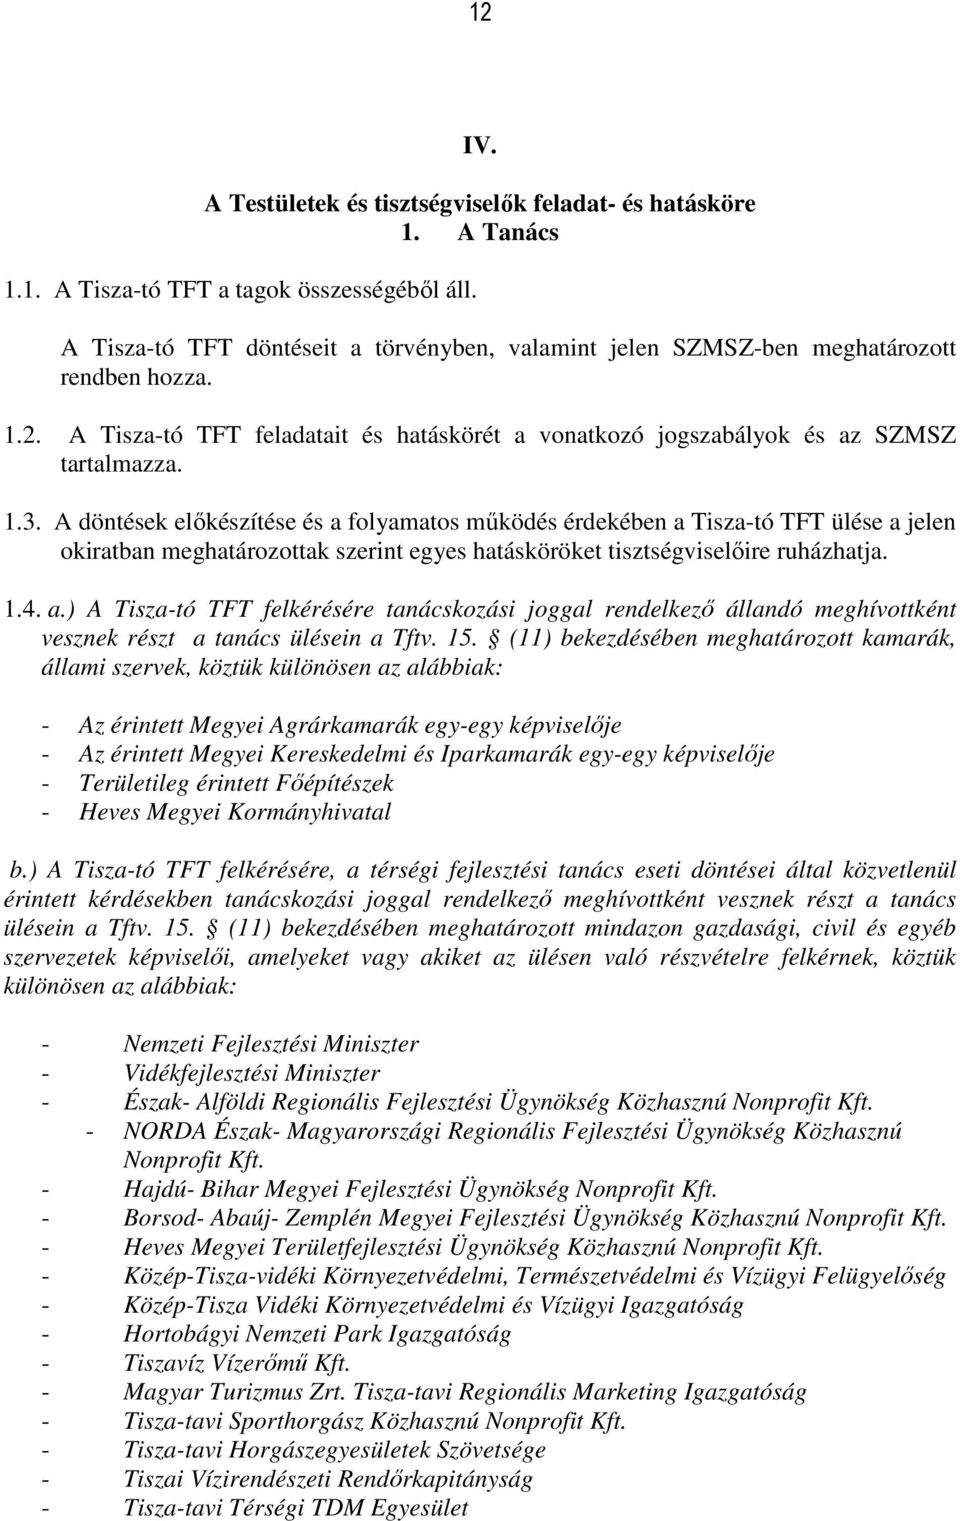 A döntések előkészítése és a folyamatos működés érdekében a Tisza-tó TFT ülése a jelen okiratban meghatározottak szerint egyes hatásköröket tisztségviselőire ruházhatja. 1.4. a.) A Tisza-tó TFT felkérésére tanácskozási joggal rendelkező állandó meghívottként vesznek részt a tanács ülésein a Tftv.